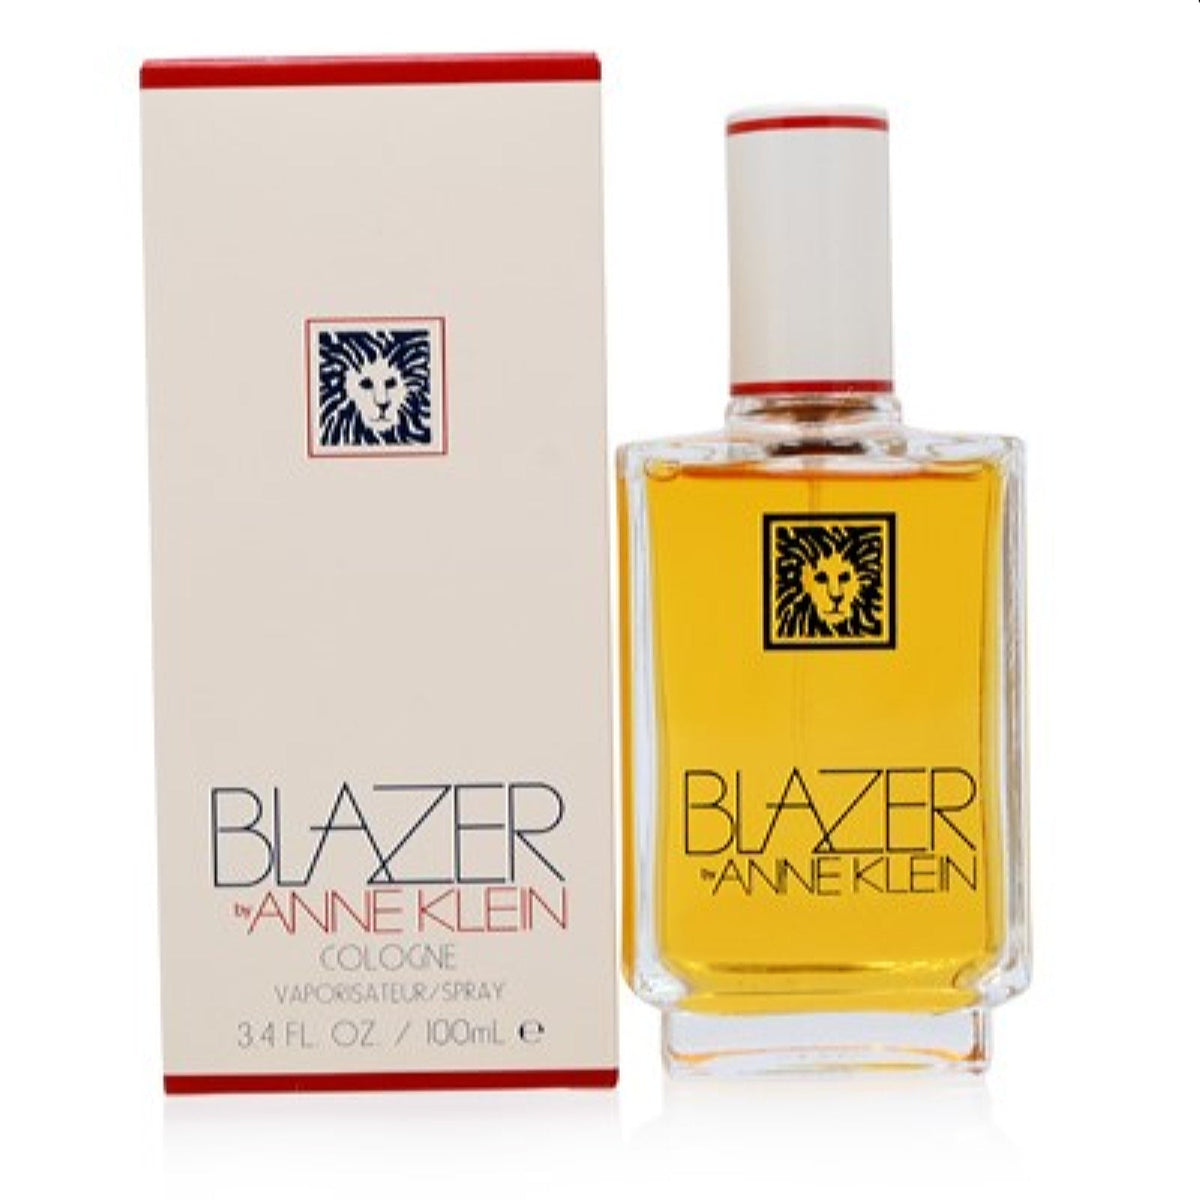 Blazer By Anne Klein Anne Klein Cologne 3.4 Oz (100 Ml) For Women  14x123415